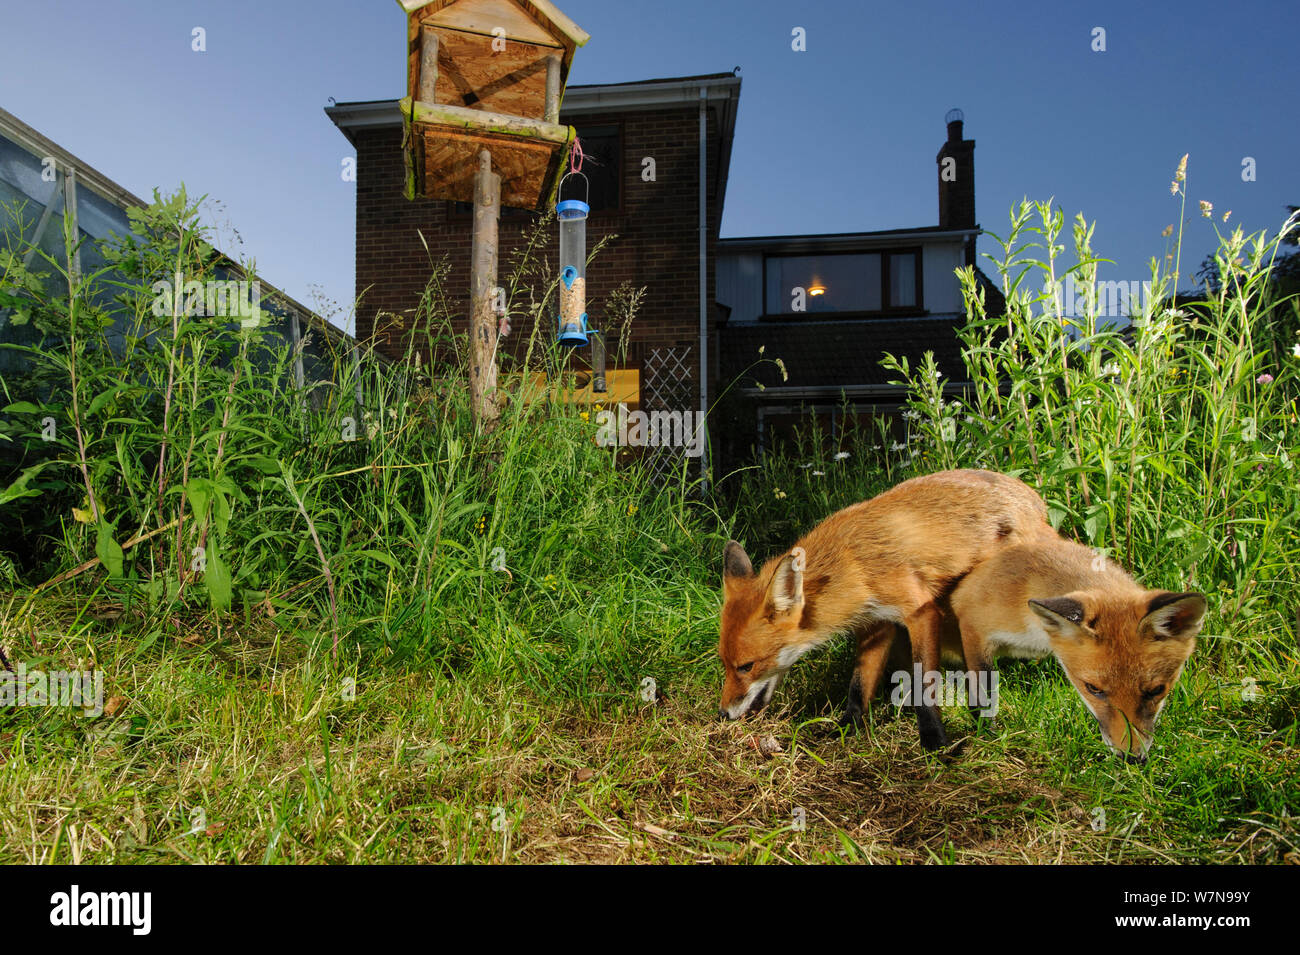 Los zorros (Vulpes vulpes) forrajeando para scaps en casa de ciudad jardín para widlife administrado. Vixen y cub. Kent, UK, en junio. Imagen de captura de la cámara. Liberados de la propiedad. Foto de stock